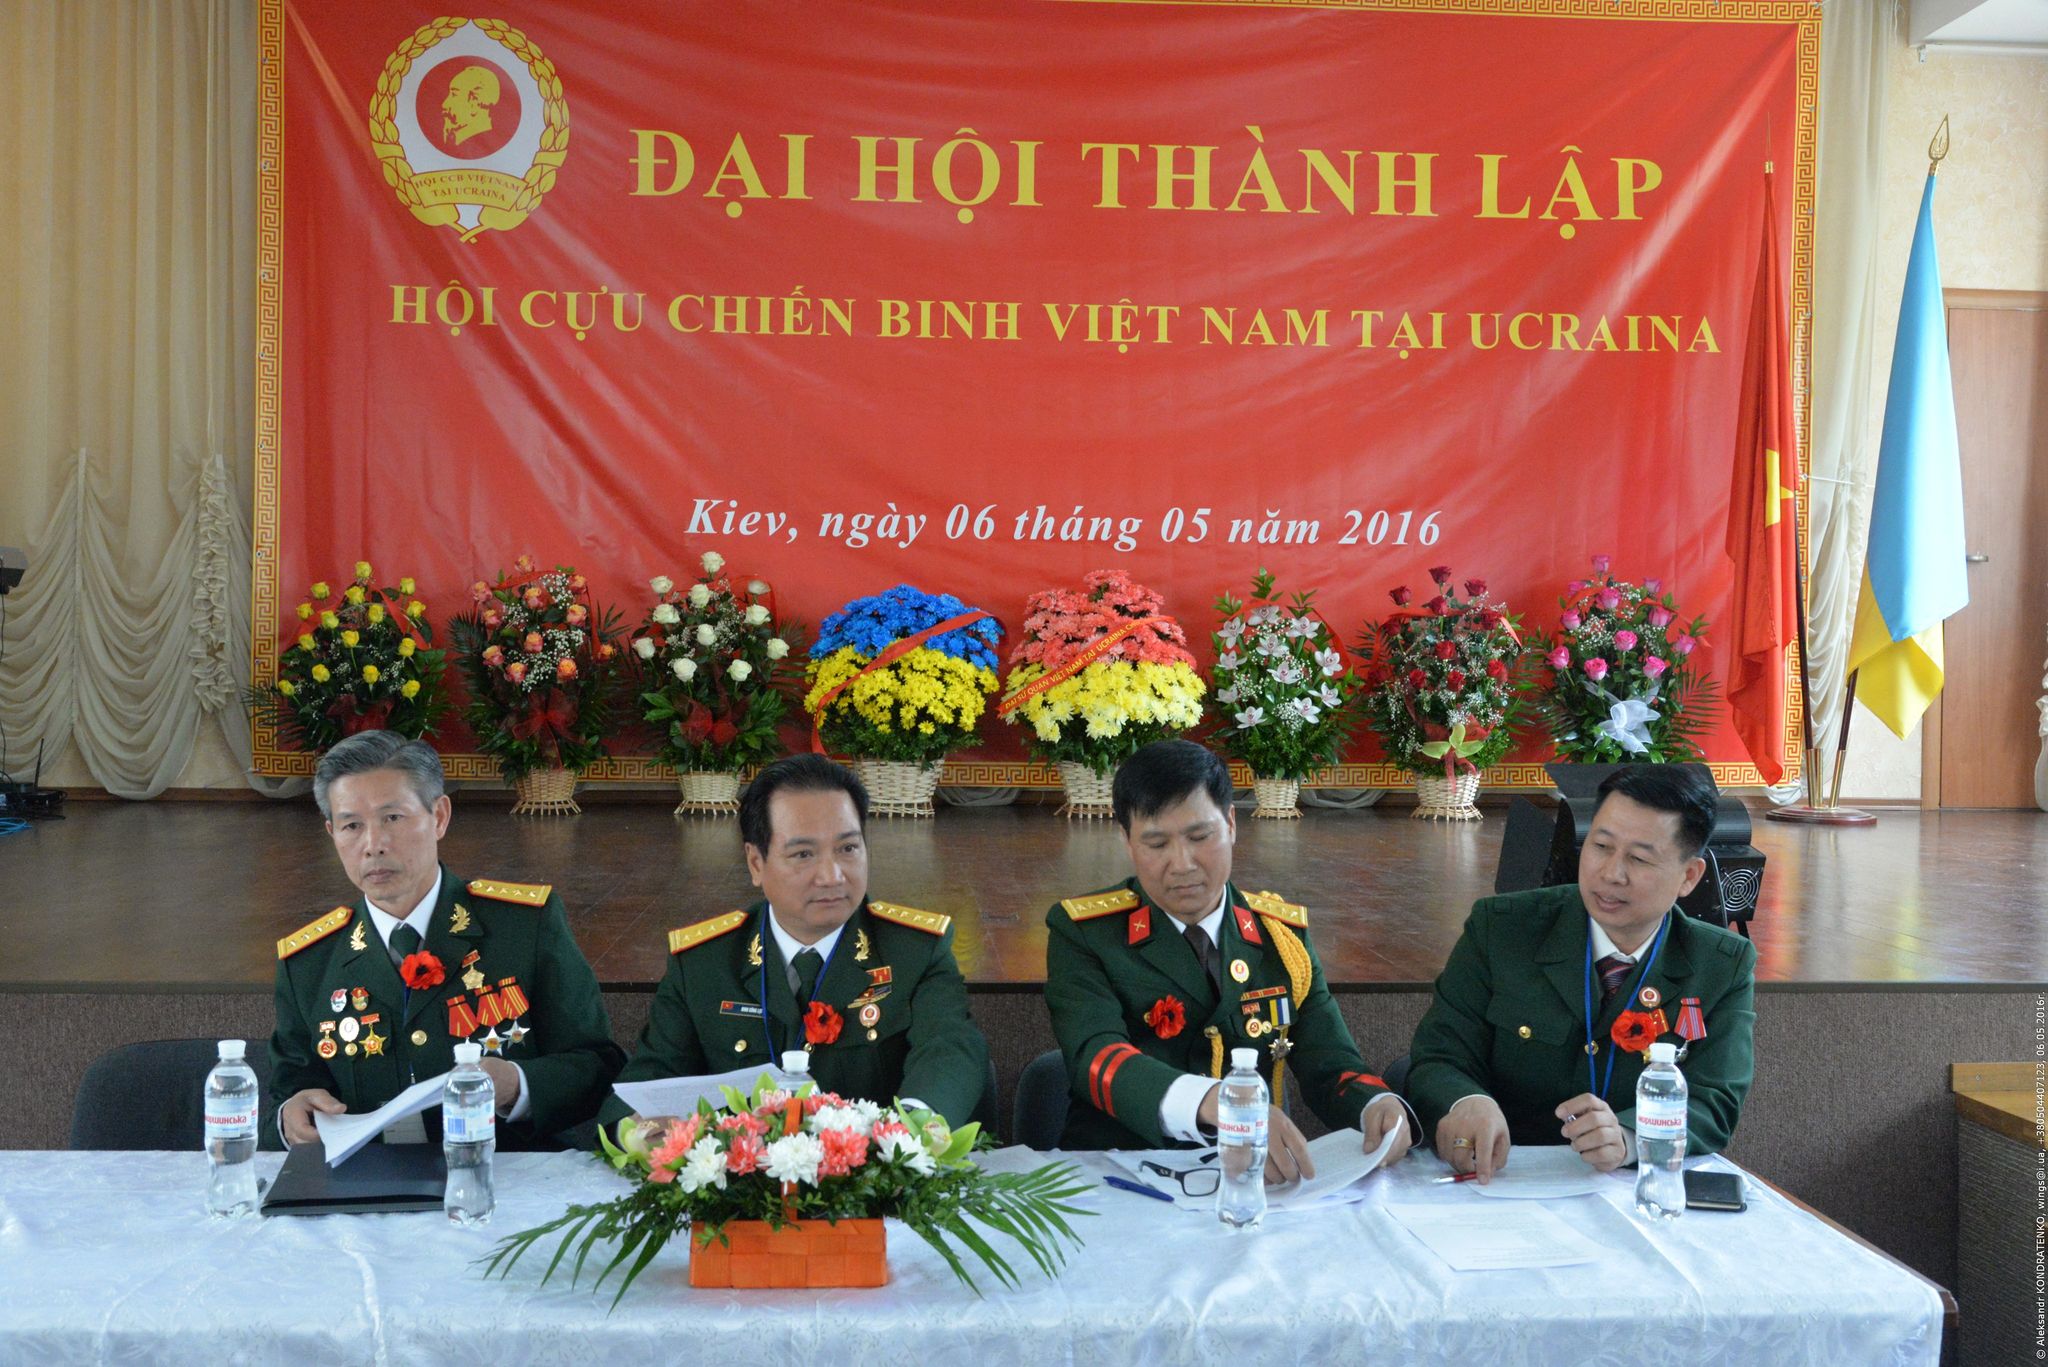 Hội Cựu chiến binh Việt Nam tại Ucraina 5 năm ngày thành lập